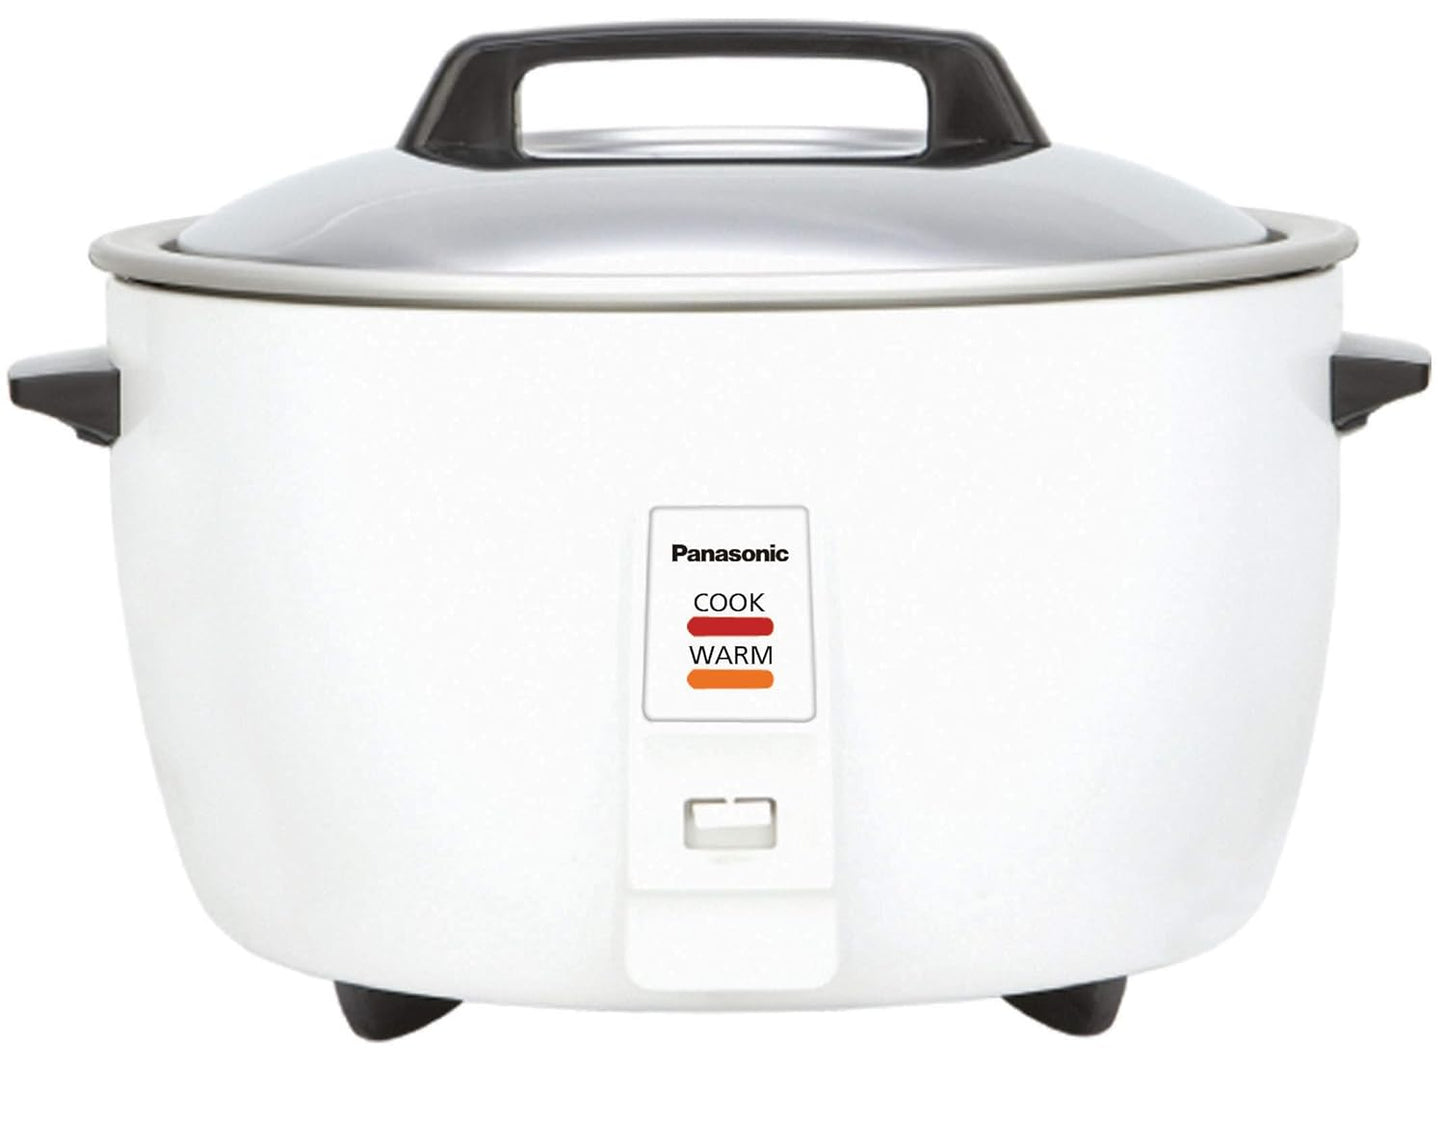 Panasonic SR-942D 10 Liter Rice Cooker, White